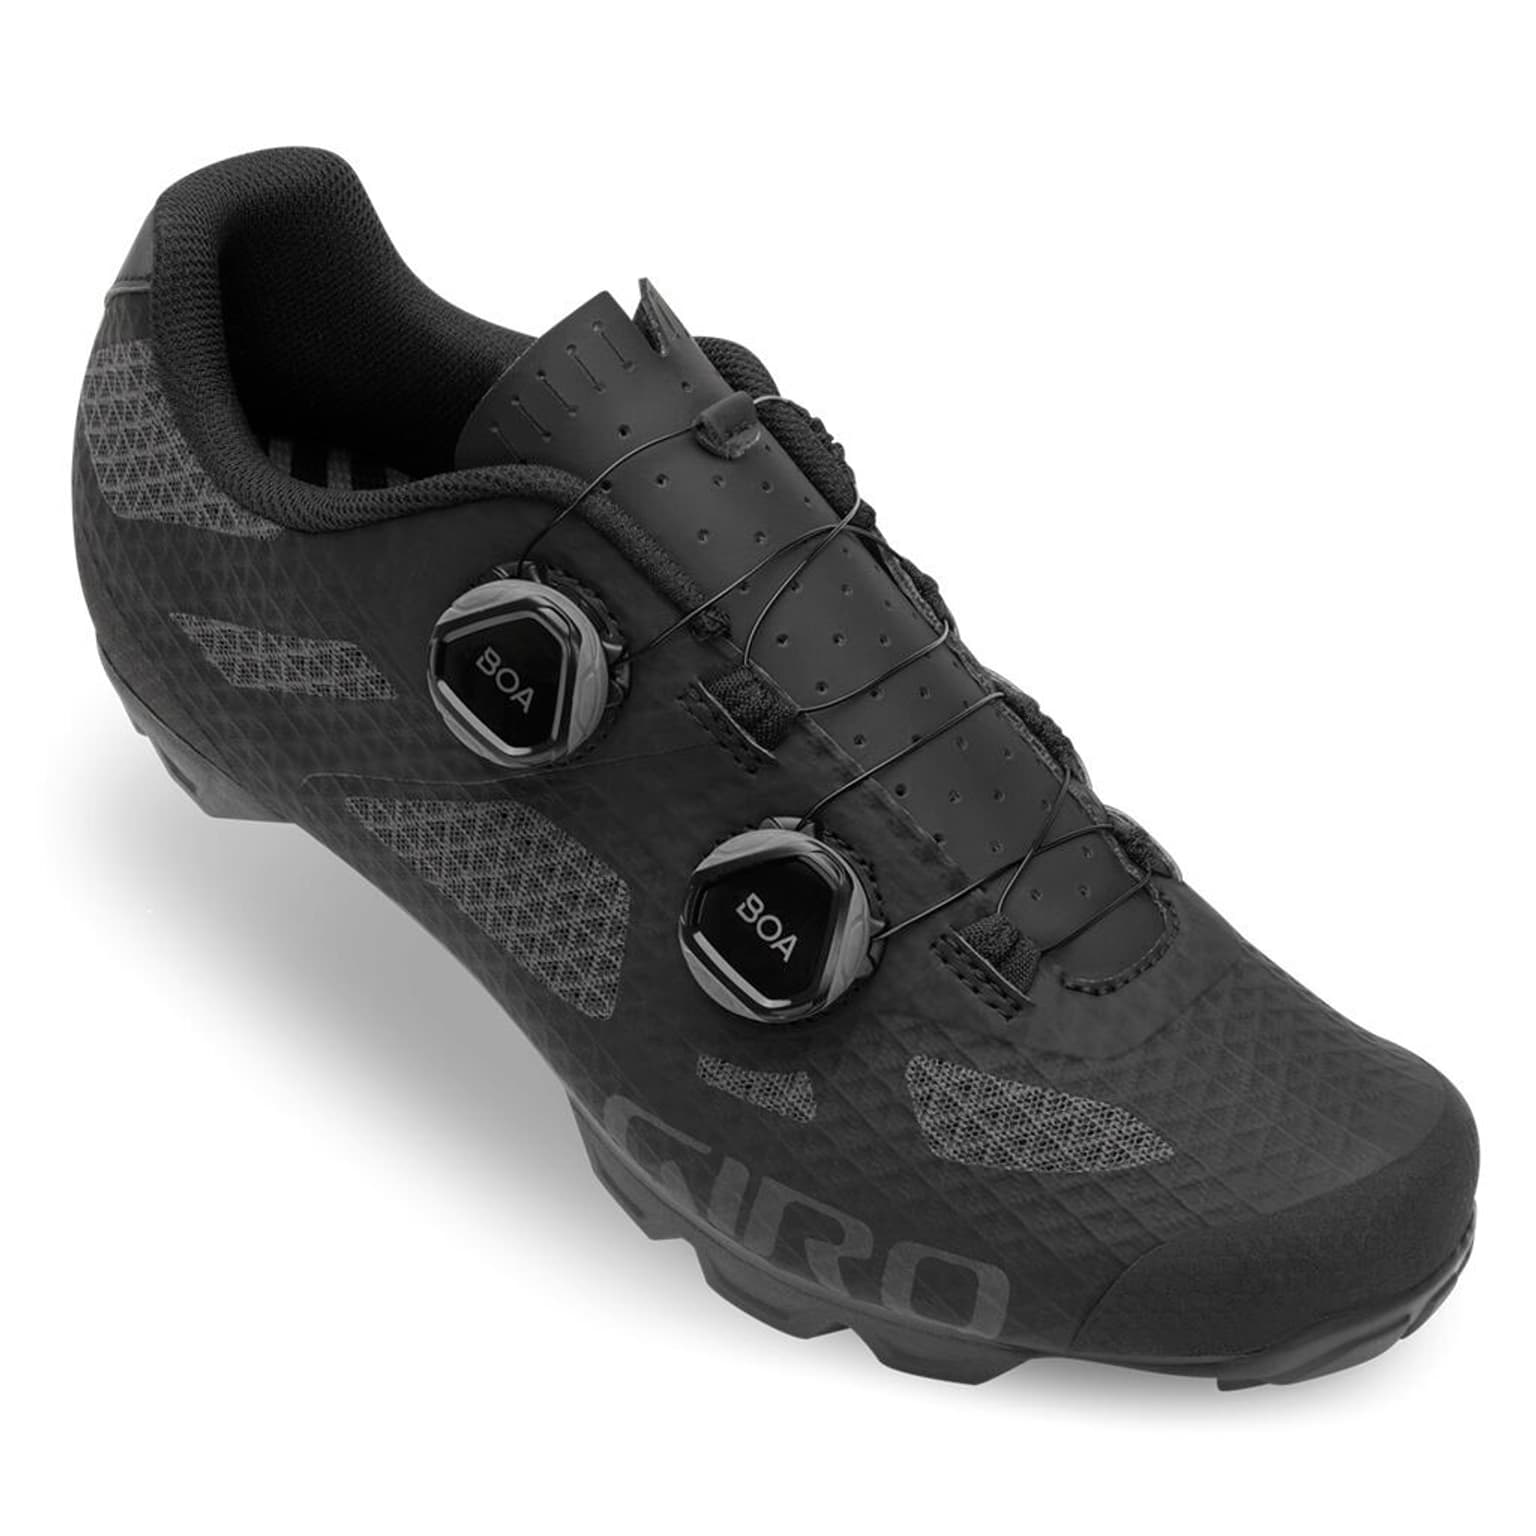 Giro Giro Sector W Shoe Chaussures de cyclisme noir 2